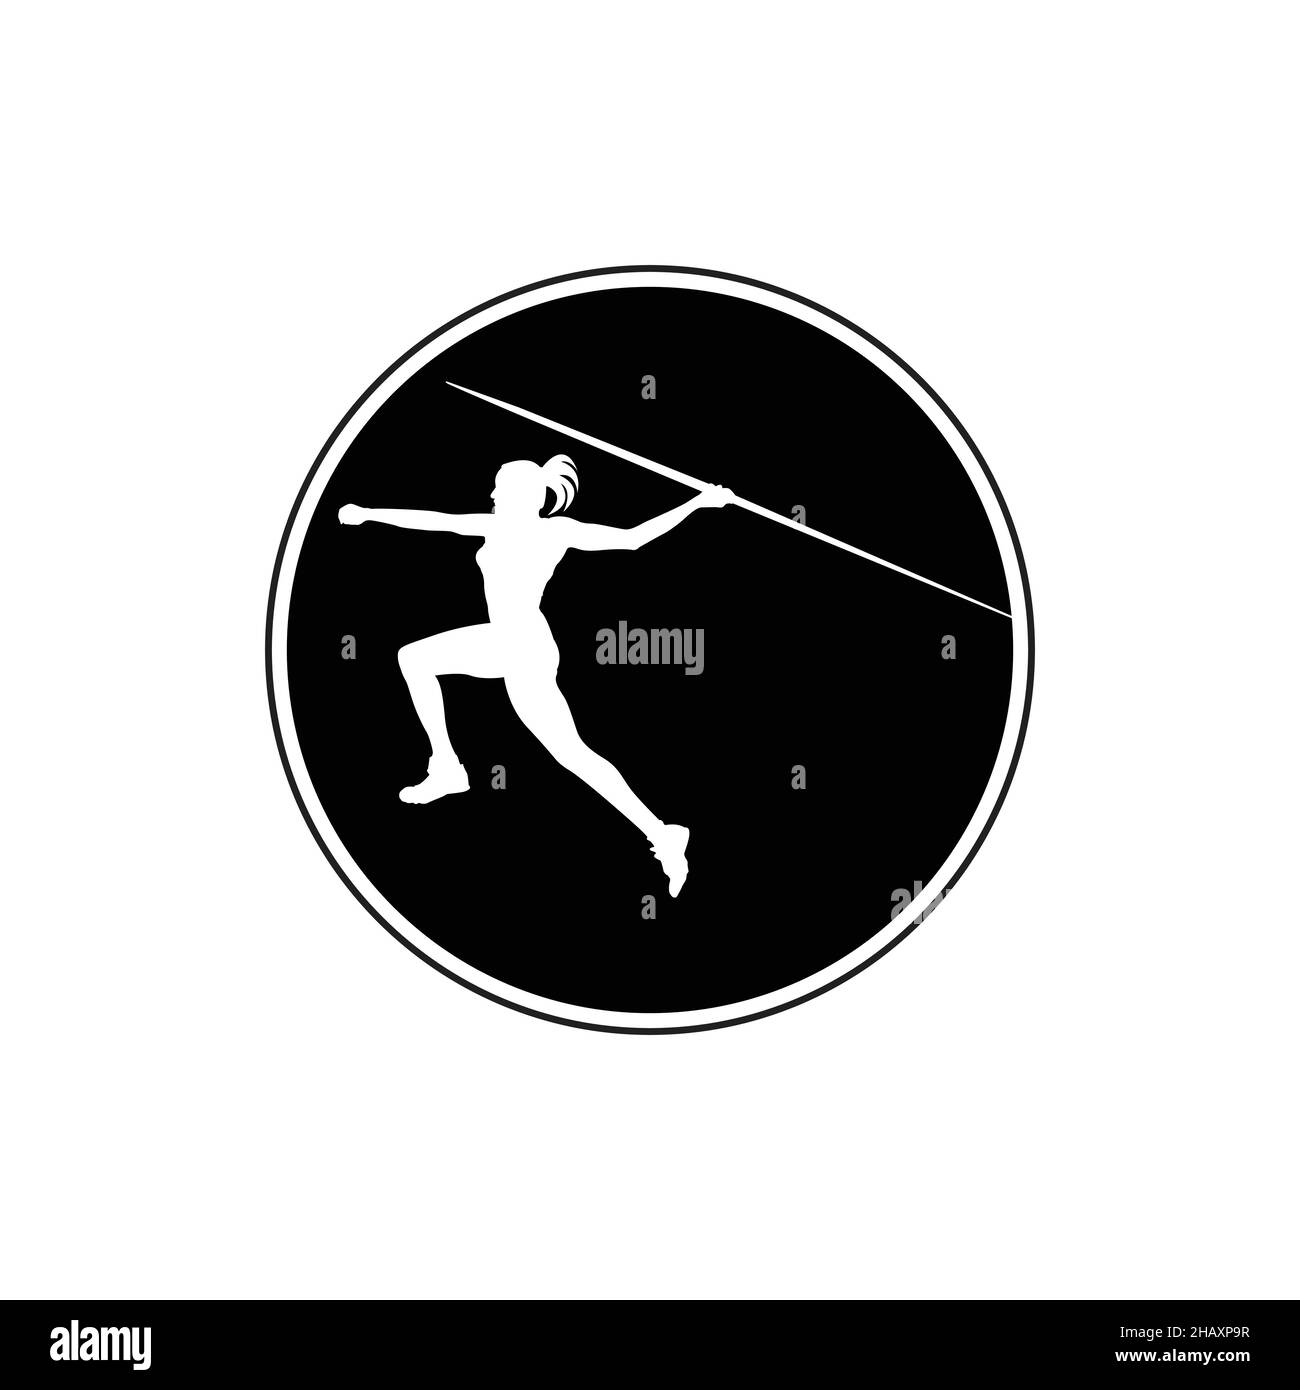 Javelin che lancia Athlete. Lancio javelin, lancio atleta, silhouette vettoriale isolata. Atletica. Illustrazione Vettoriale